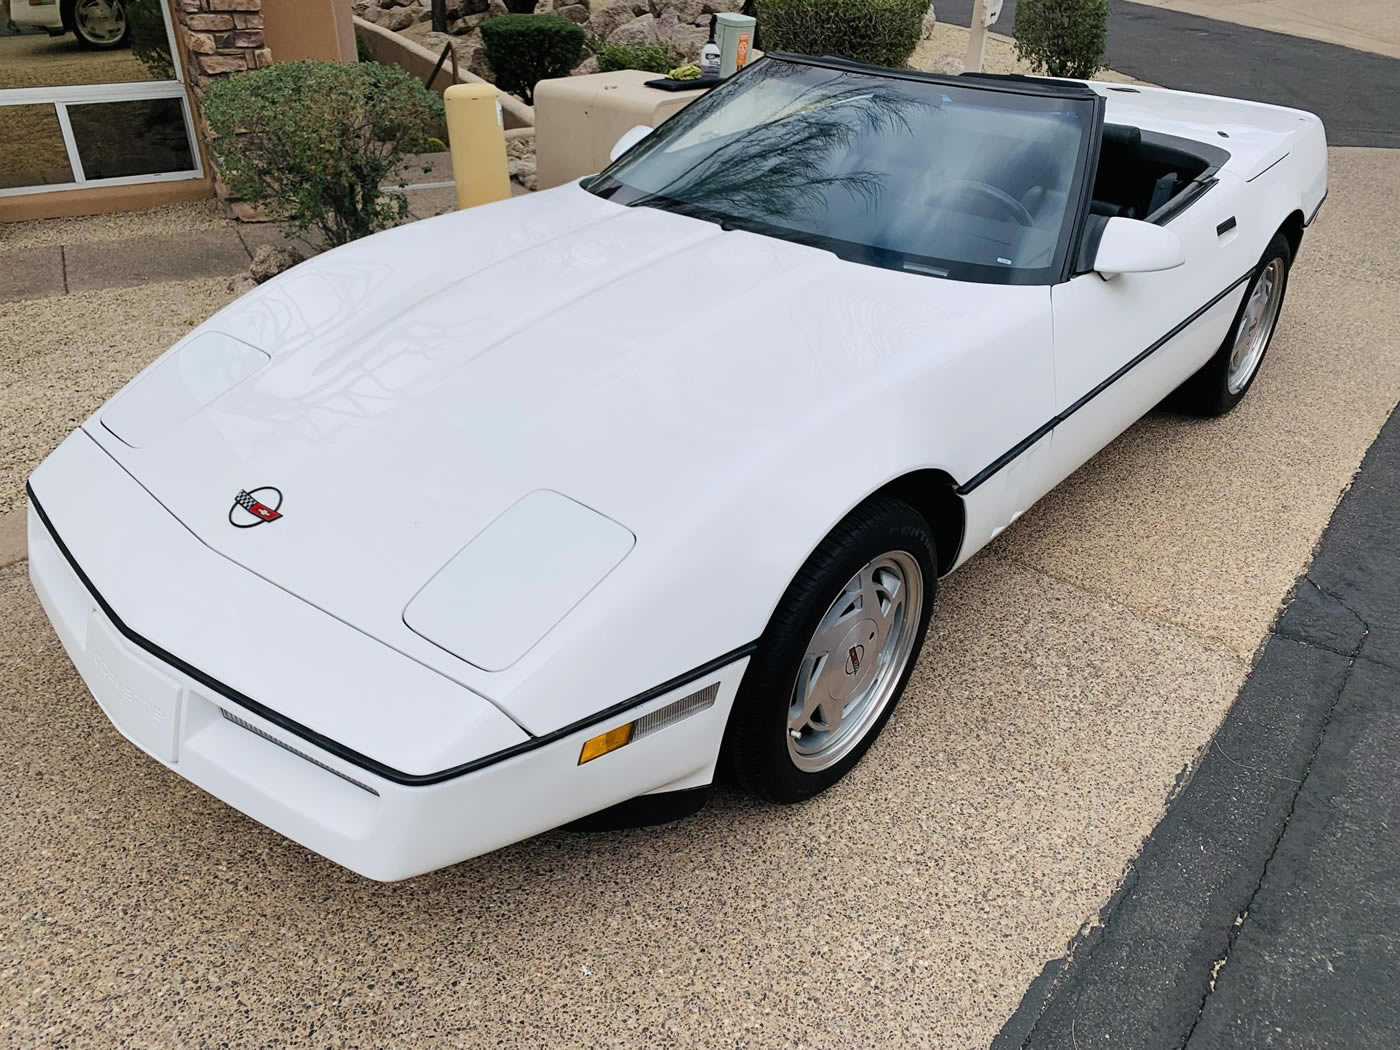 1988 Corvette Convertible in White